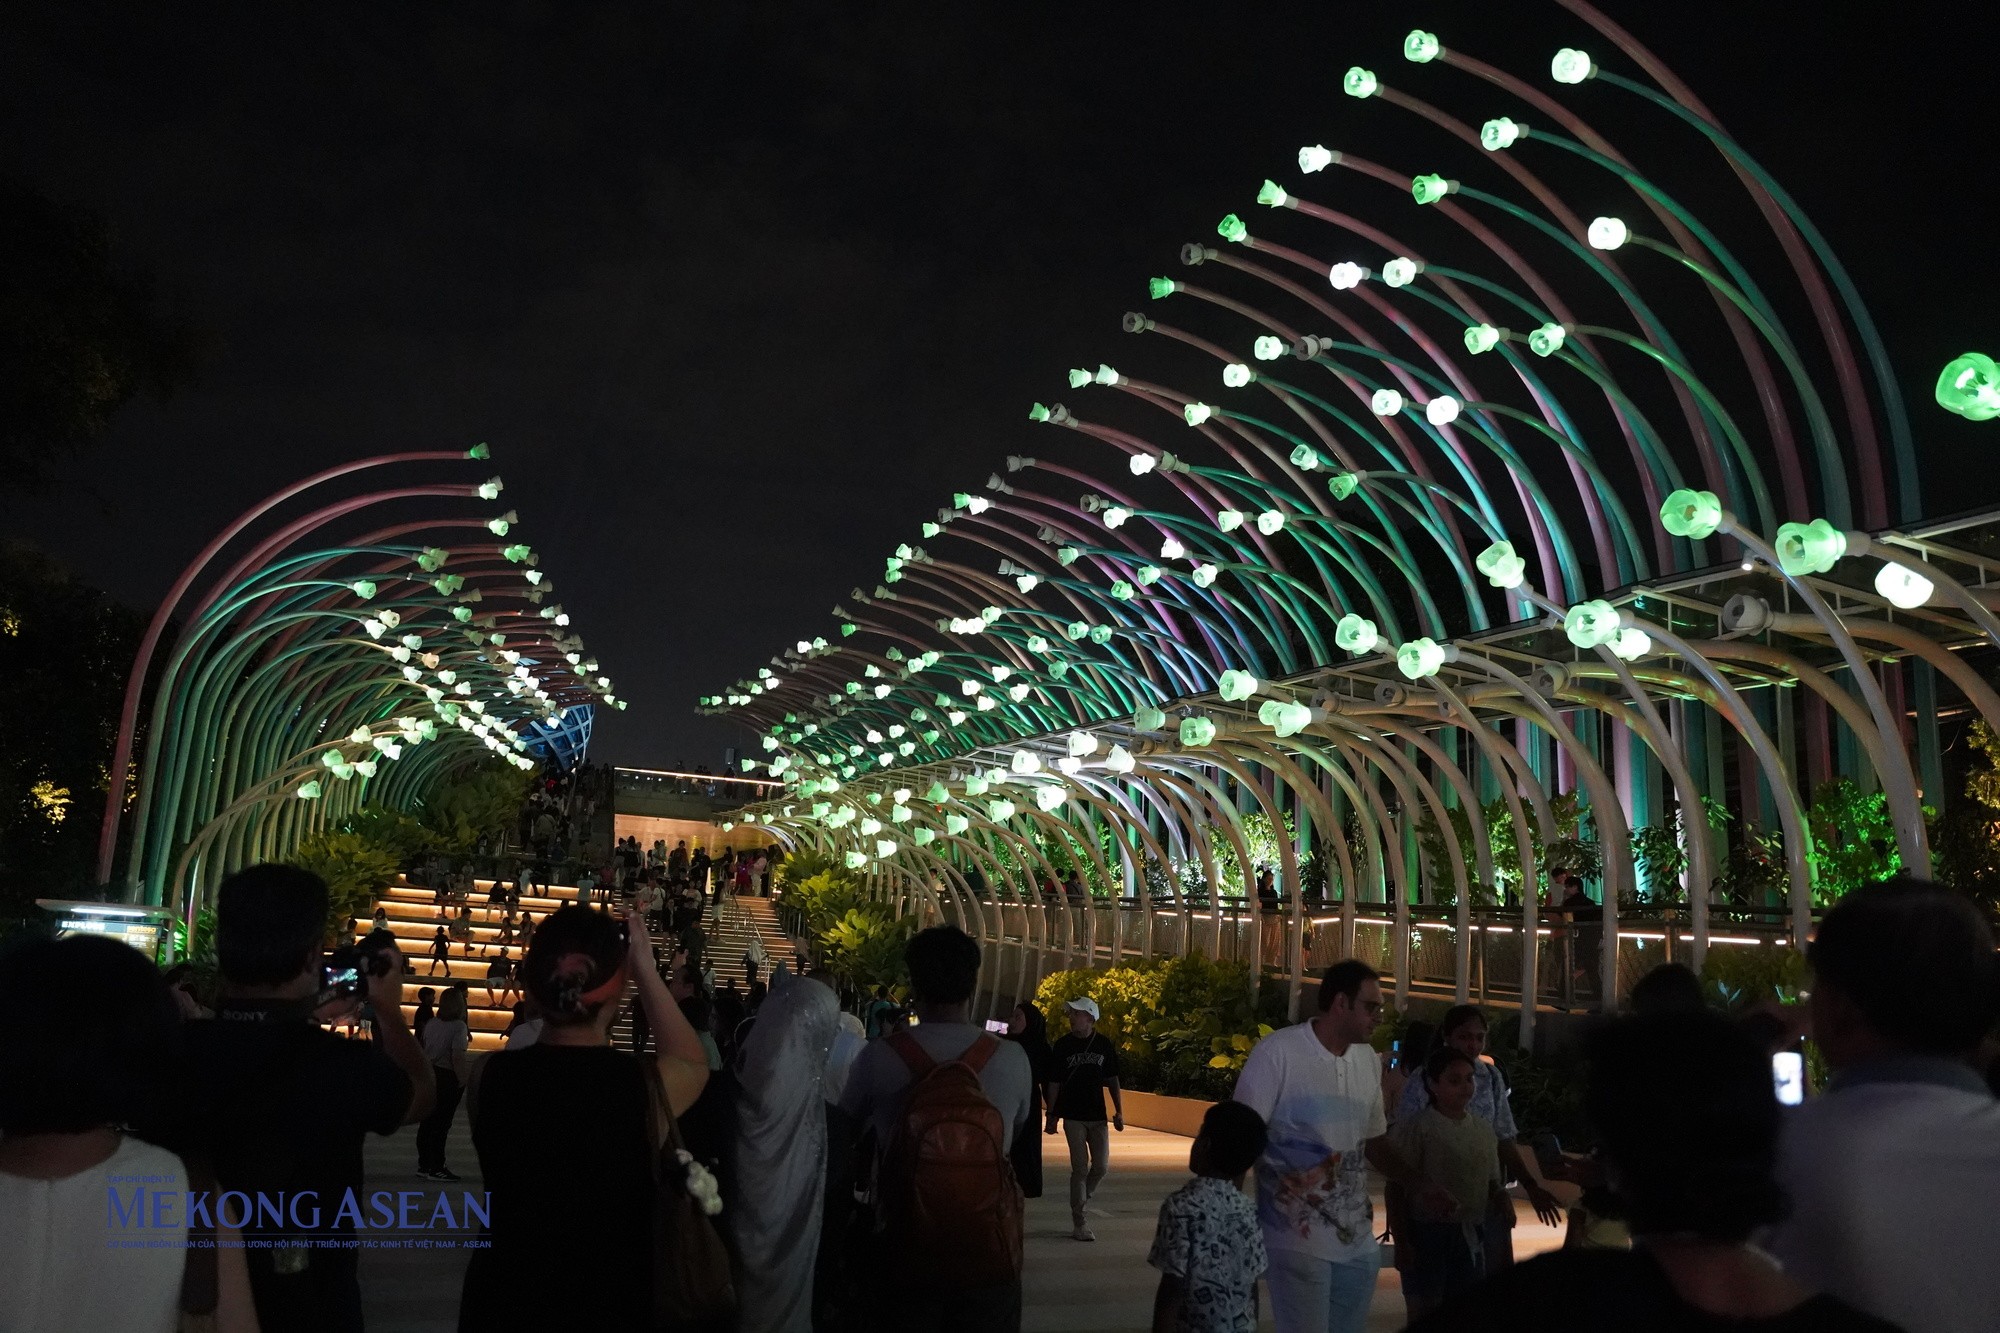 Lối đi bộ Sensoryscape lung linh sắc màu vào ban đêm. Ảnh: Thảo Ngân - Mekong ASEAN.